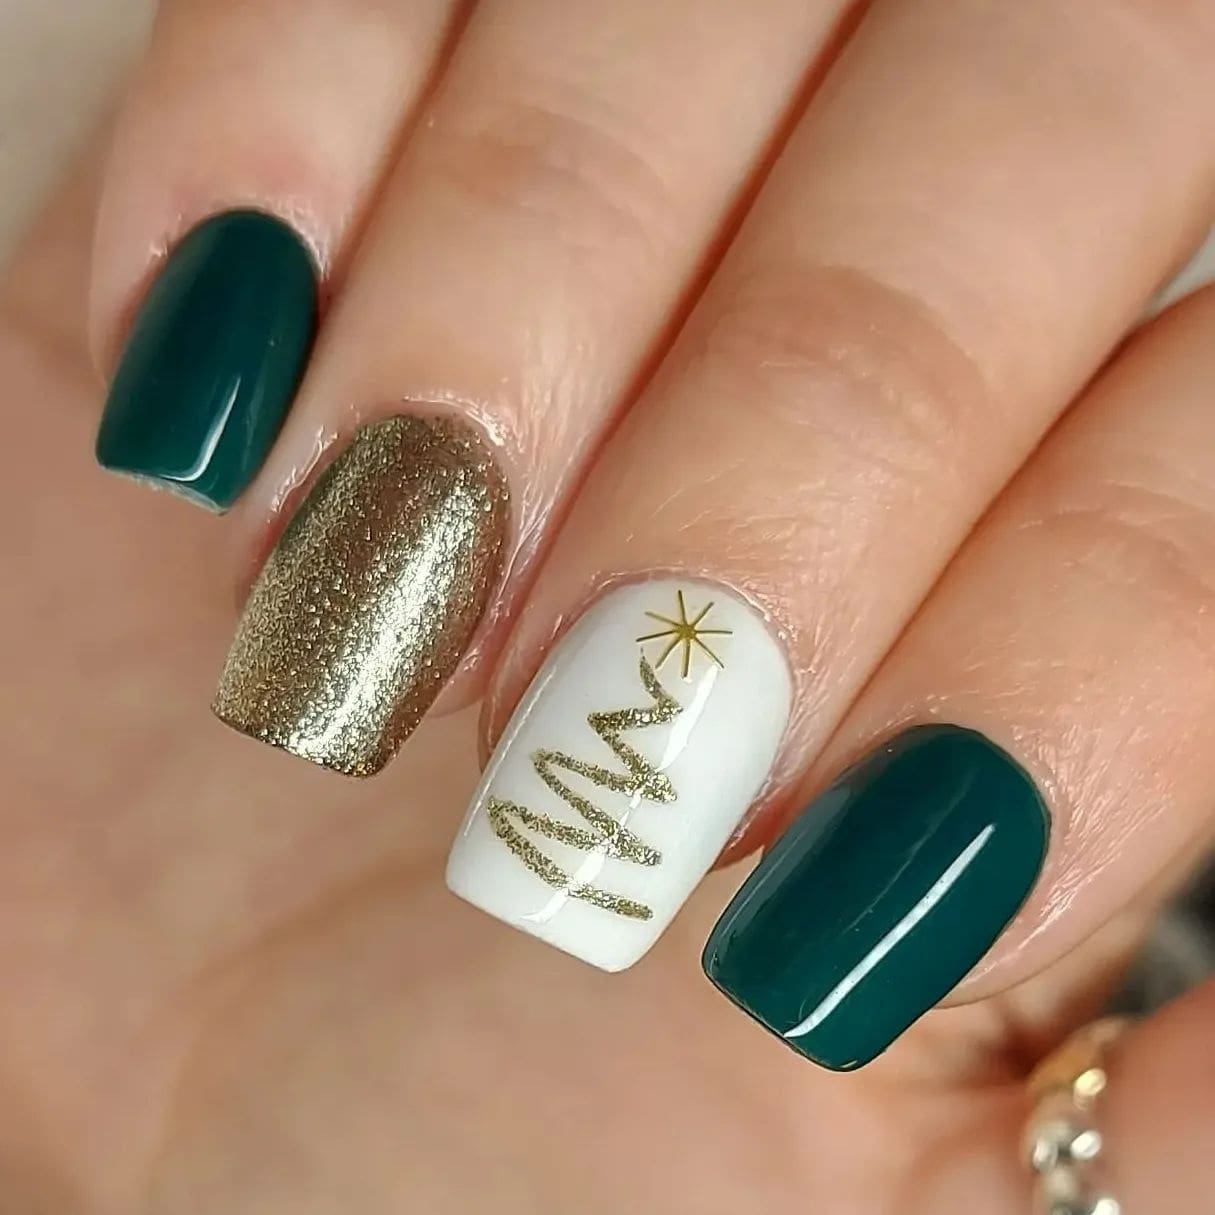 Eine Nahaufnahme von Nägeln in festlicher Kombination aus Grün, Weiß und Gold